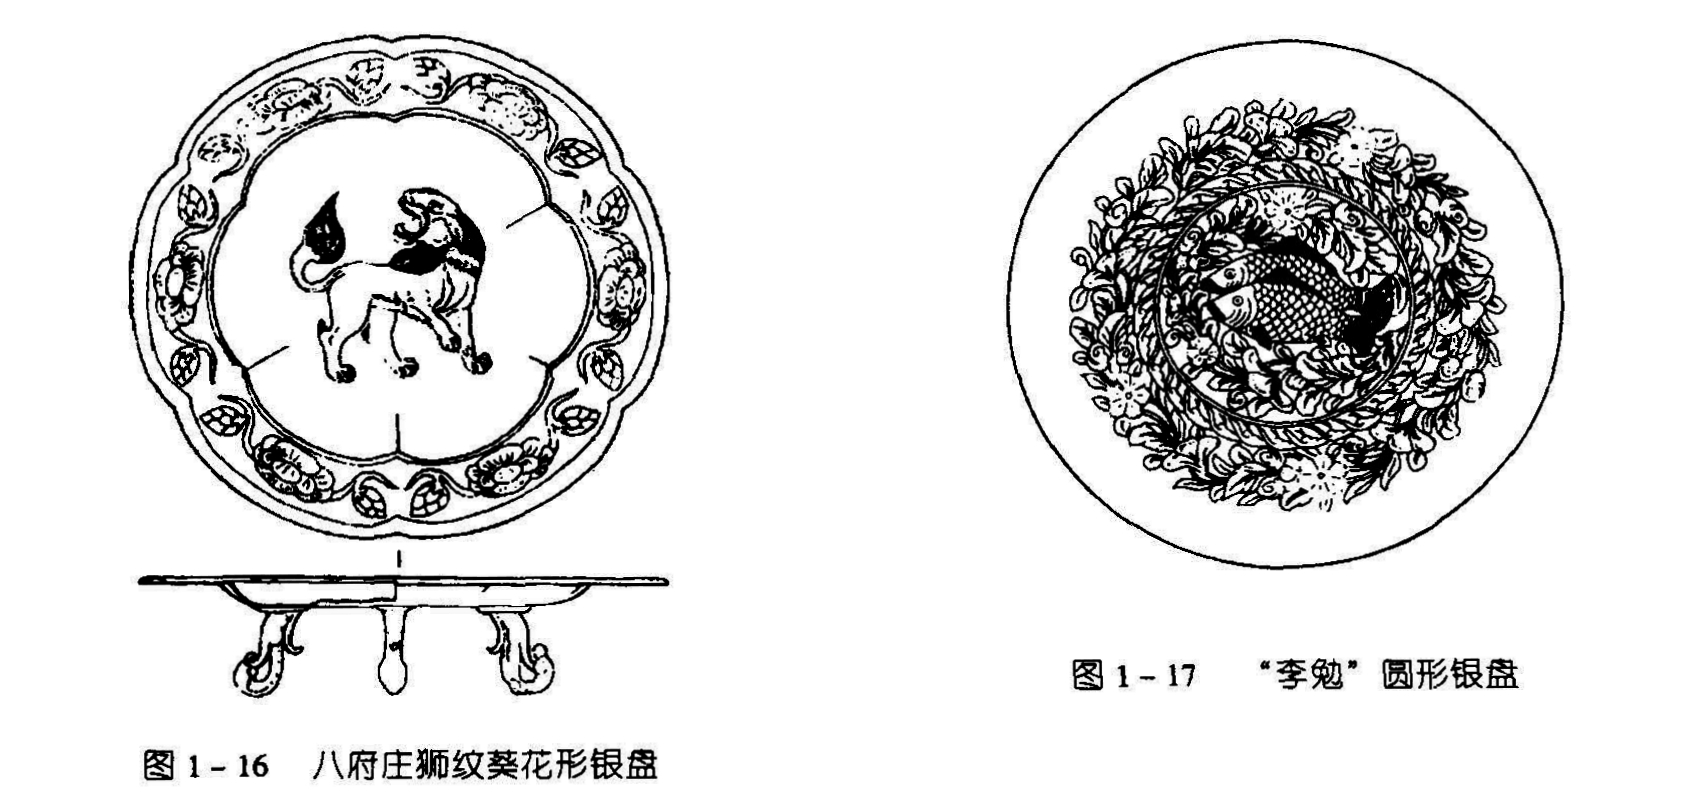 图1-17 “李勉”圆形银盘 图1-16 八府庄狮纹葵花形银盘